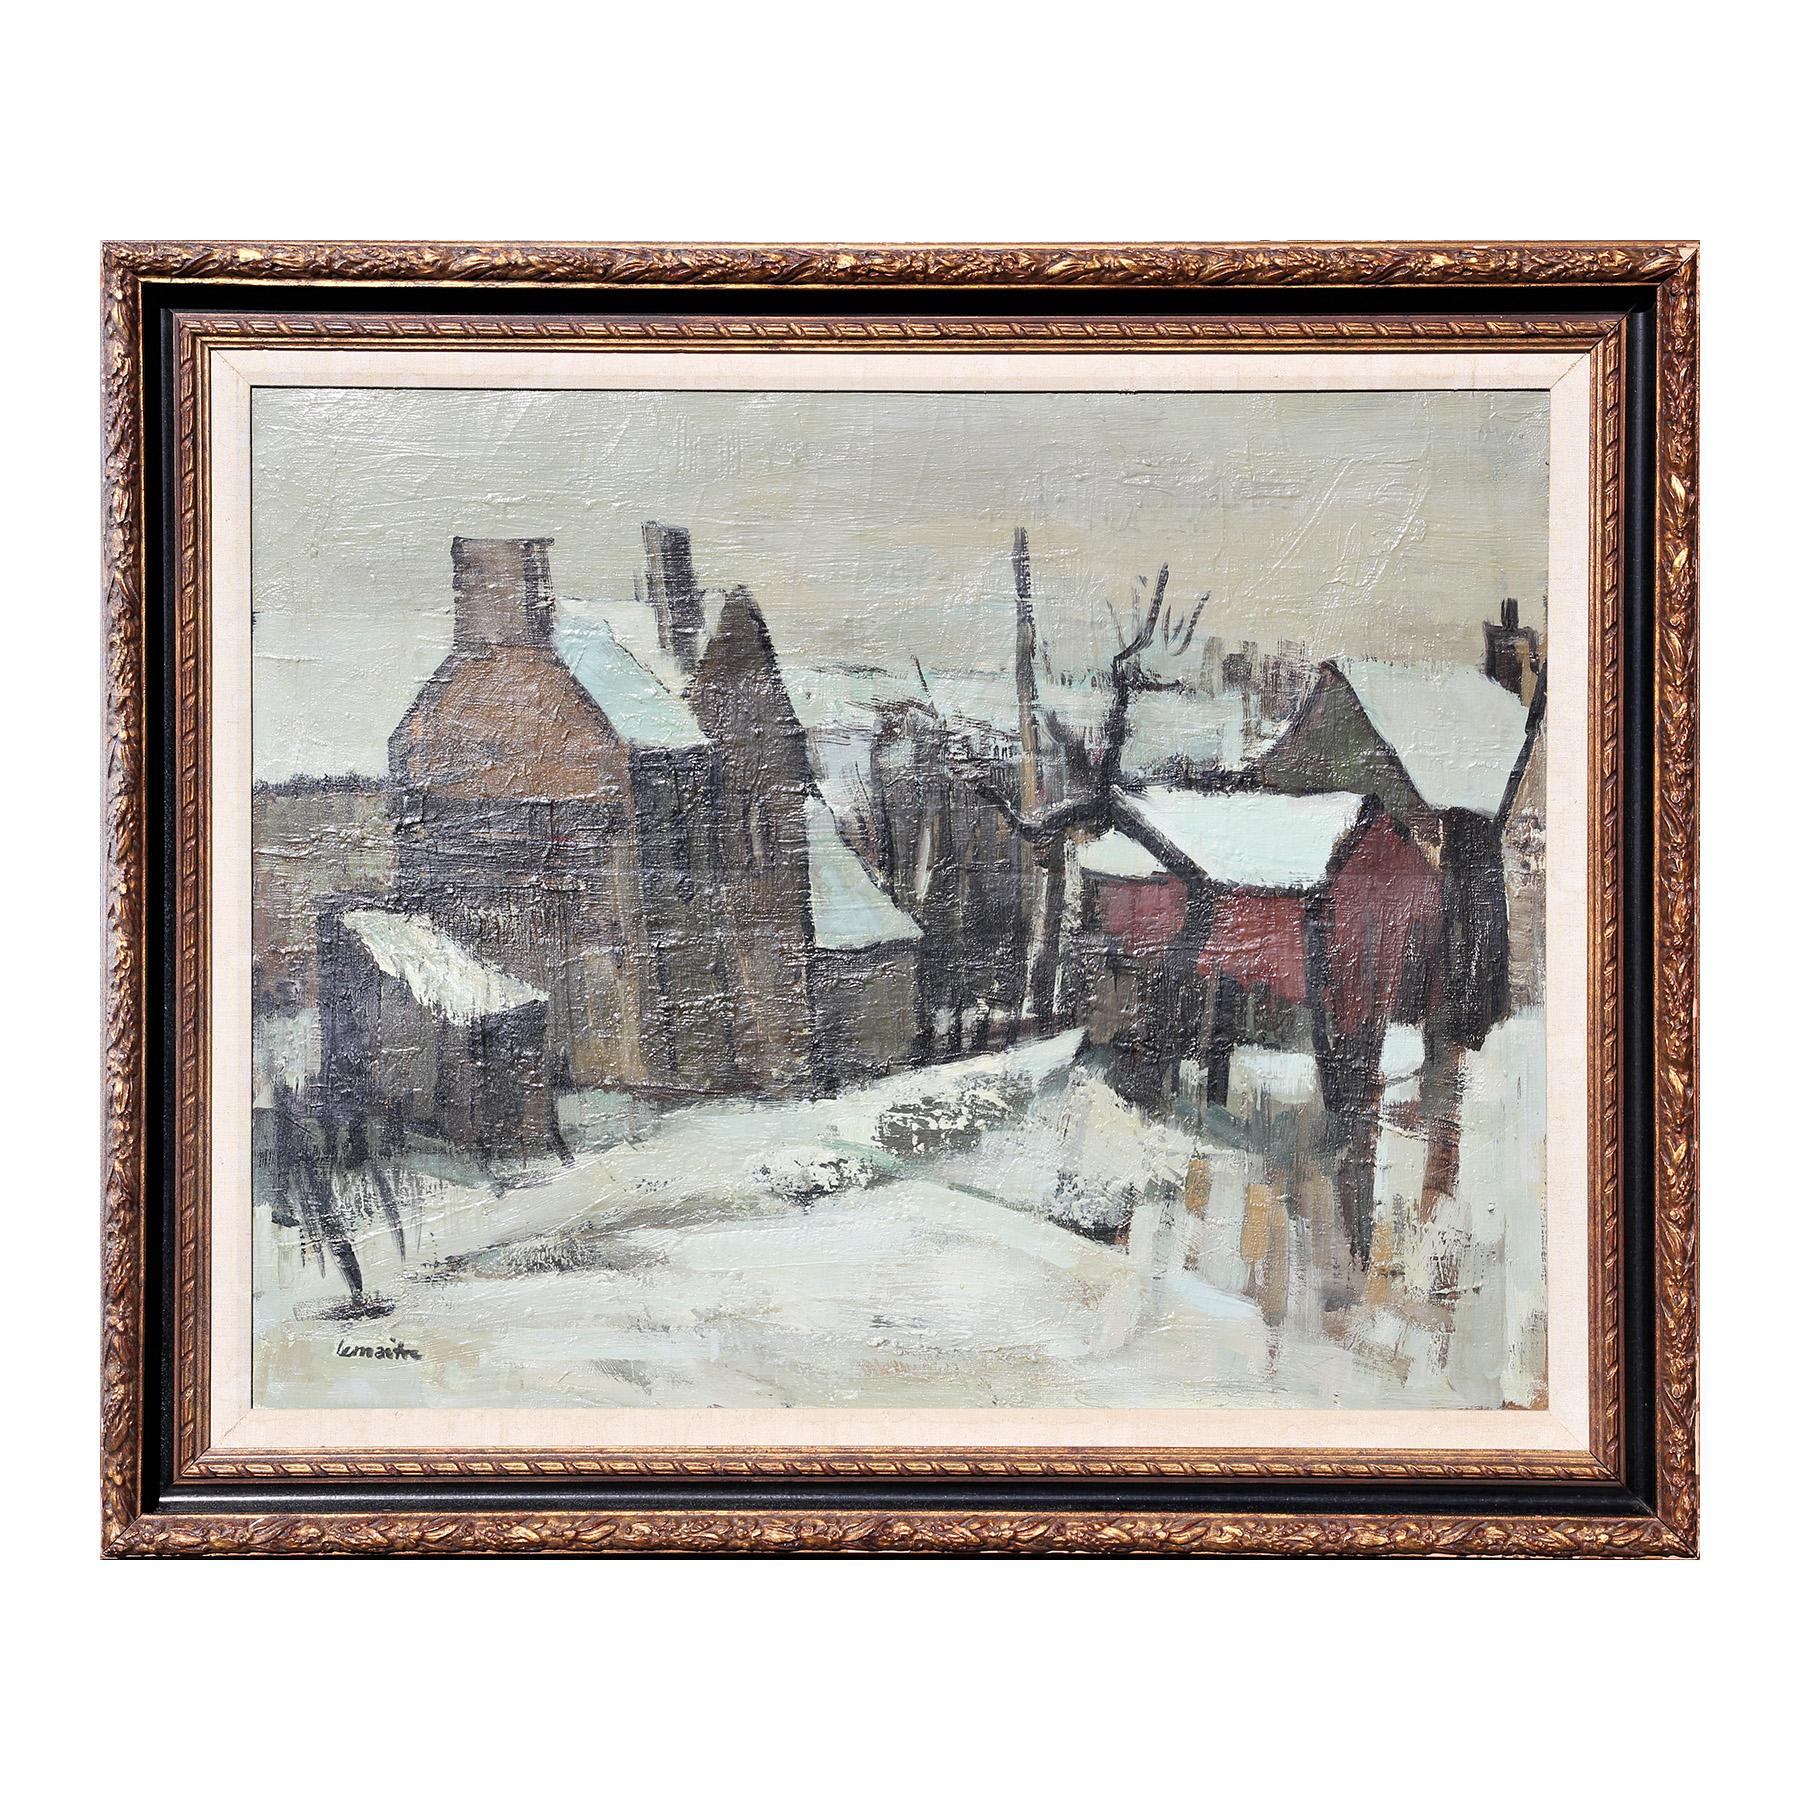 Impressionistisches Schneewittchen-Landschaftsgemälde im Landhausstil in Neige von Paysage de neige – Painting von André Lemaitre